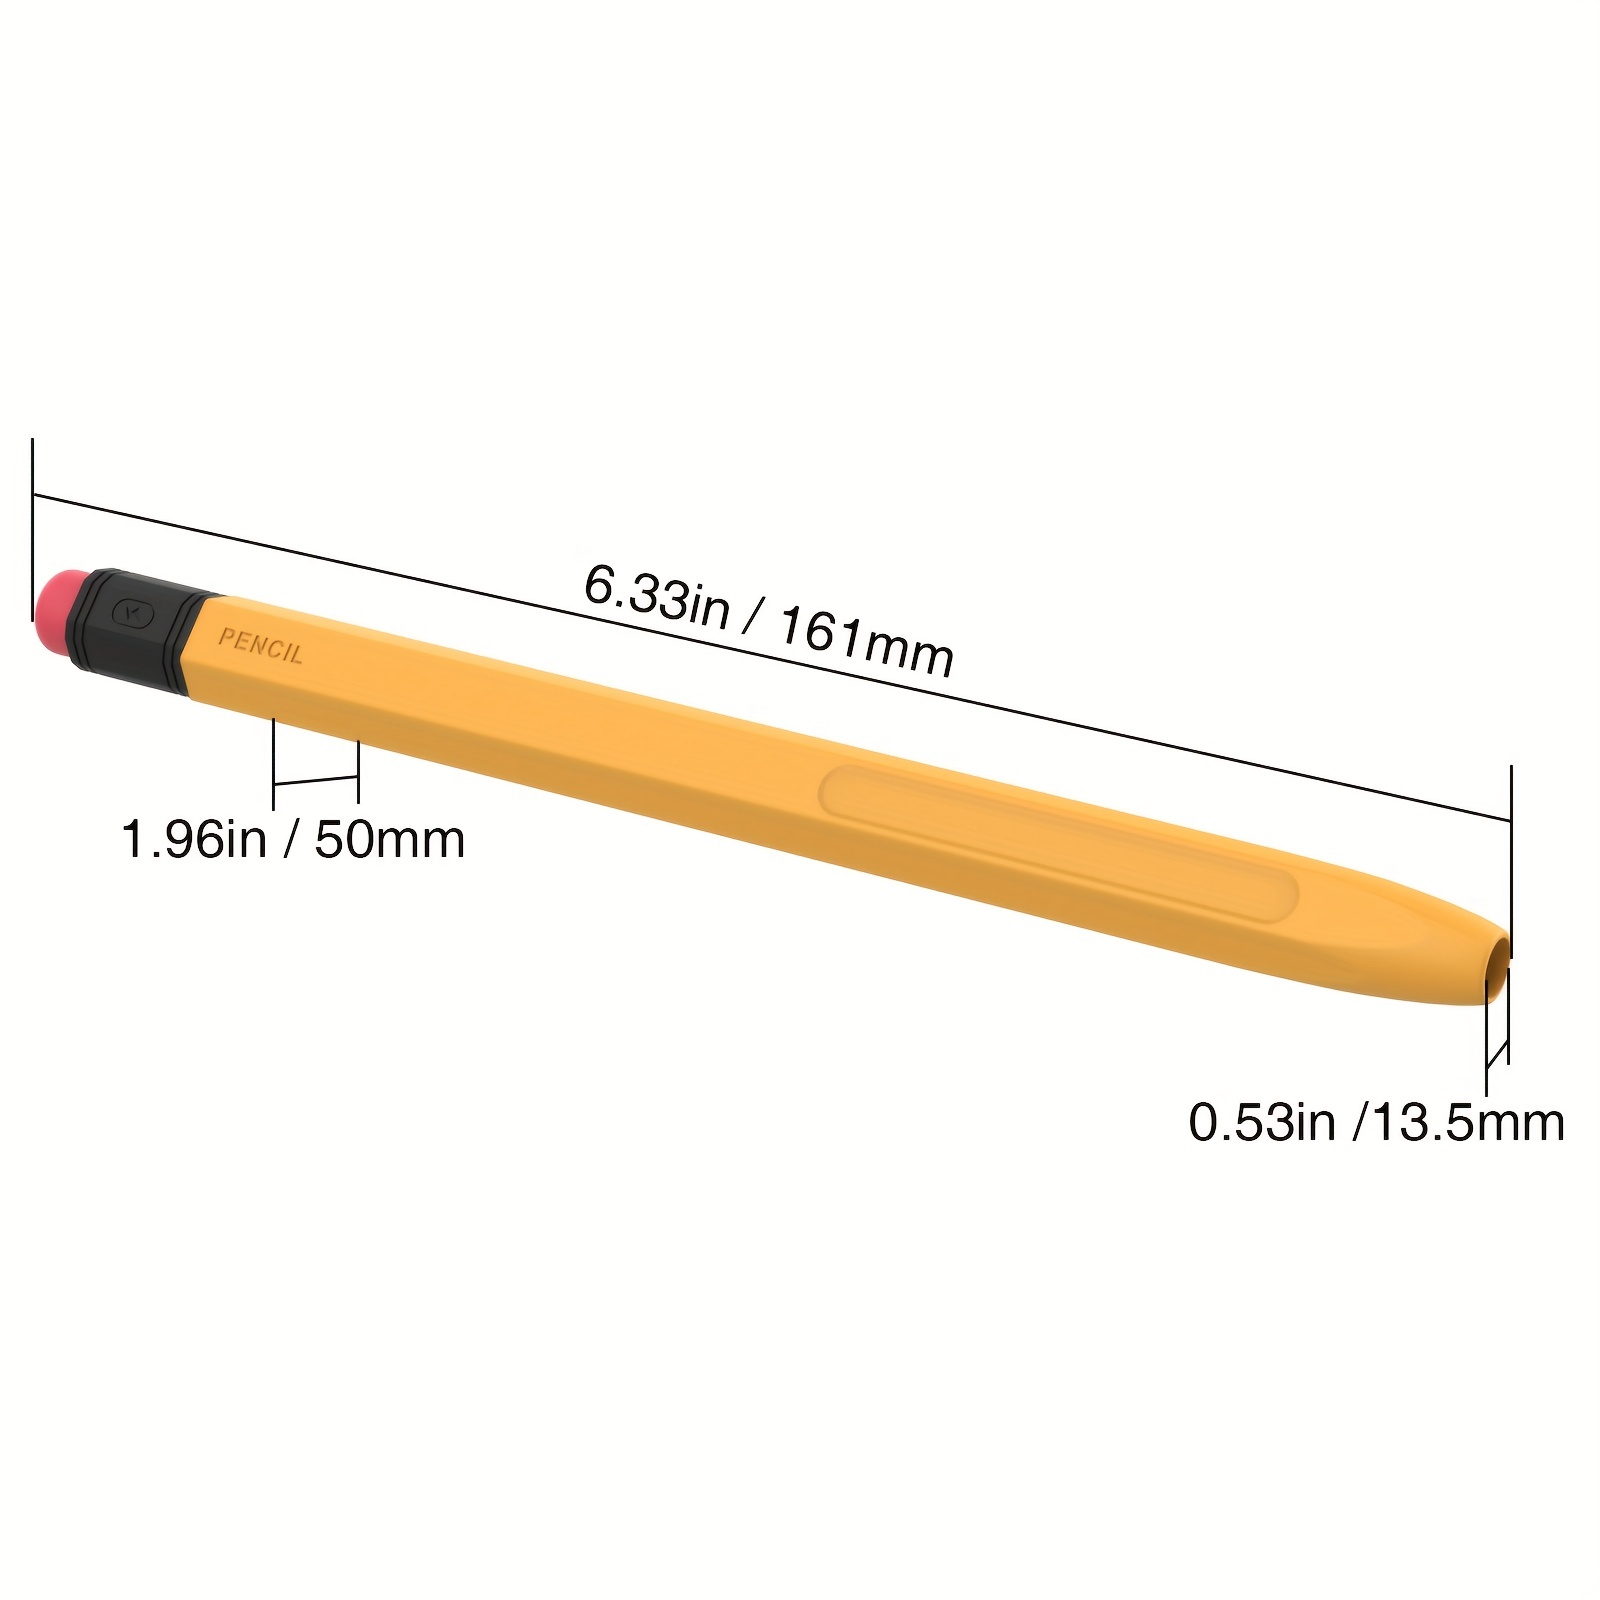 Per Pencil Di Seconda Generazione Con Ricarica Magnetica Wireless,  Sensibilità All'inclinazione, Stesso Modello Di Pencil Di Seconda  Generazione, Compatibile Con IPad Pro 11 In 1/2/3/4, IPad Pro 12.9 In  3/4/5/6, IPad Air